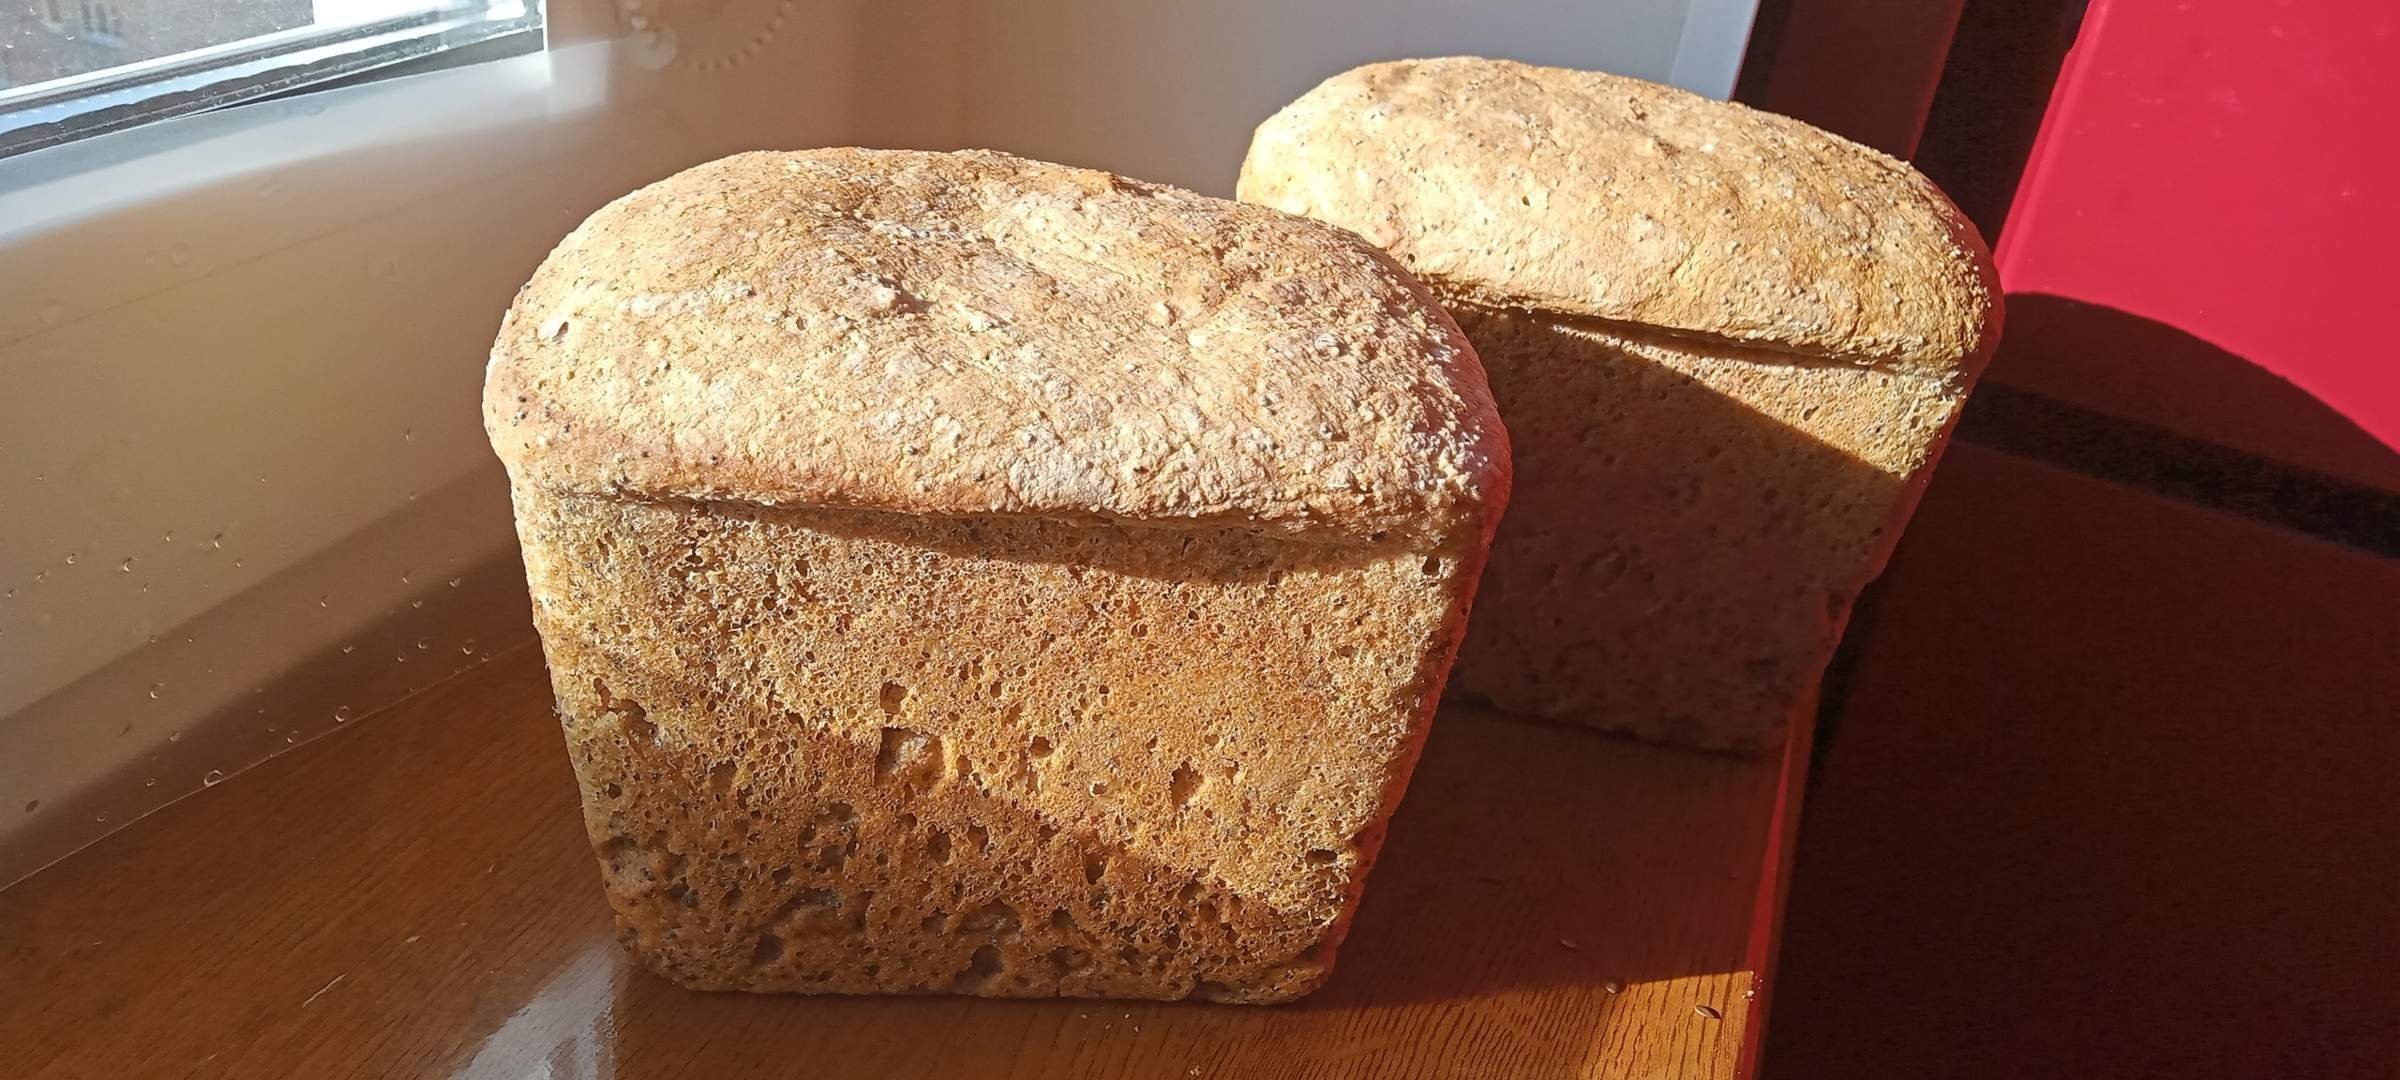 Хлеб бездрожжевой без закваски рецепты. Бездрожжевой хлеб на закваске. Хлебушек домашний бездрожжевой. Бездрожжевой хлеб у башкир. Как выглядит хлеб на бездрожжевой закваске.